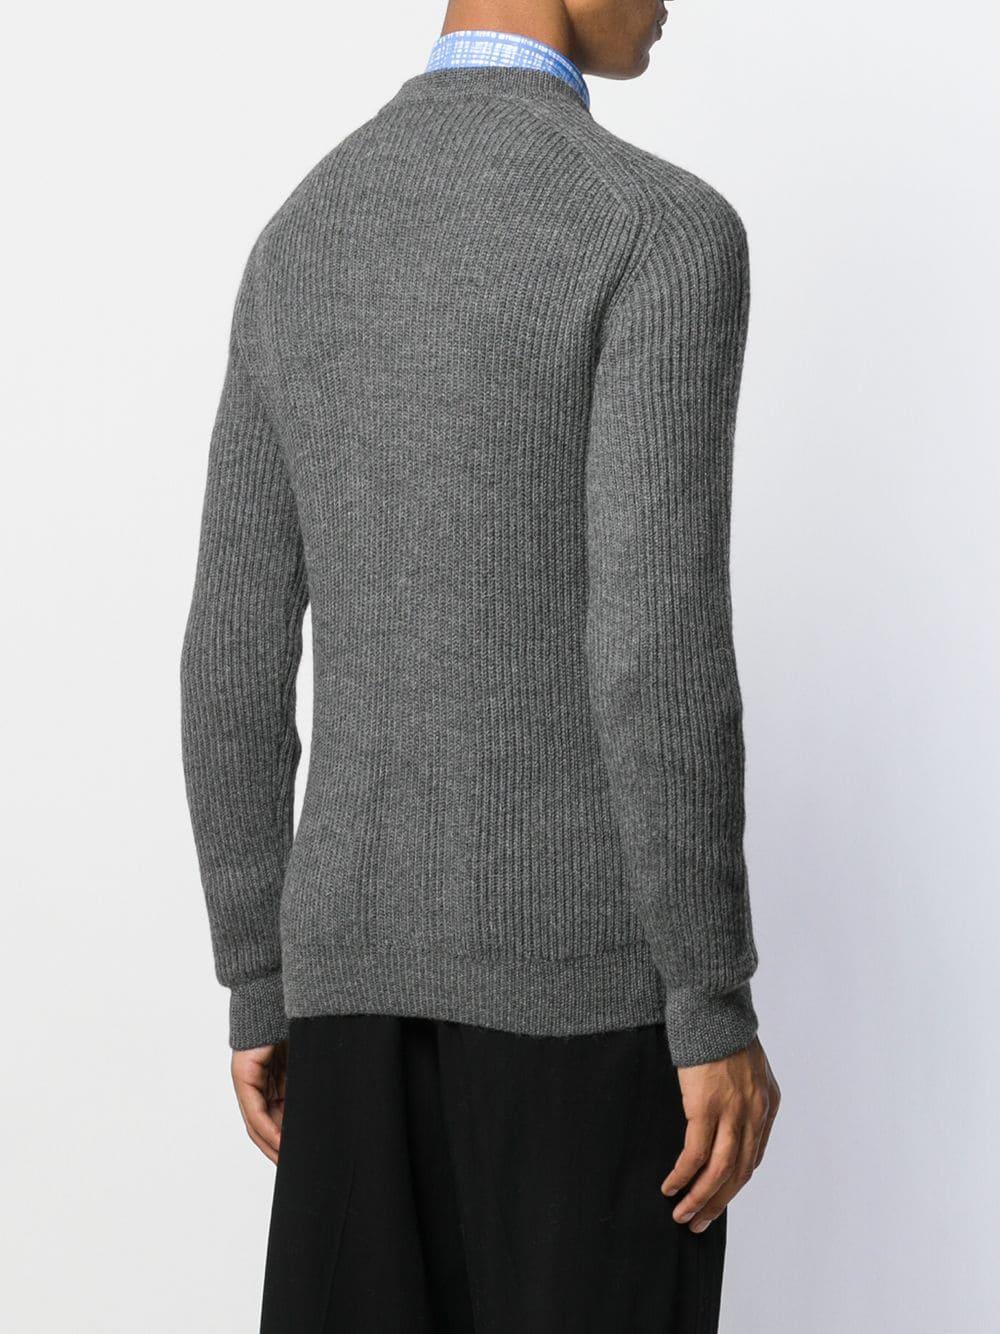 Prada Wool Ribbed Jumper in Grey (Gray) for Men - Lyst